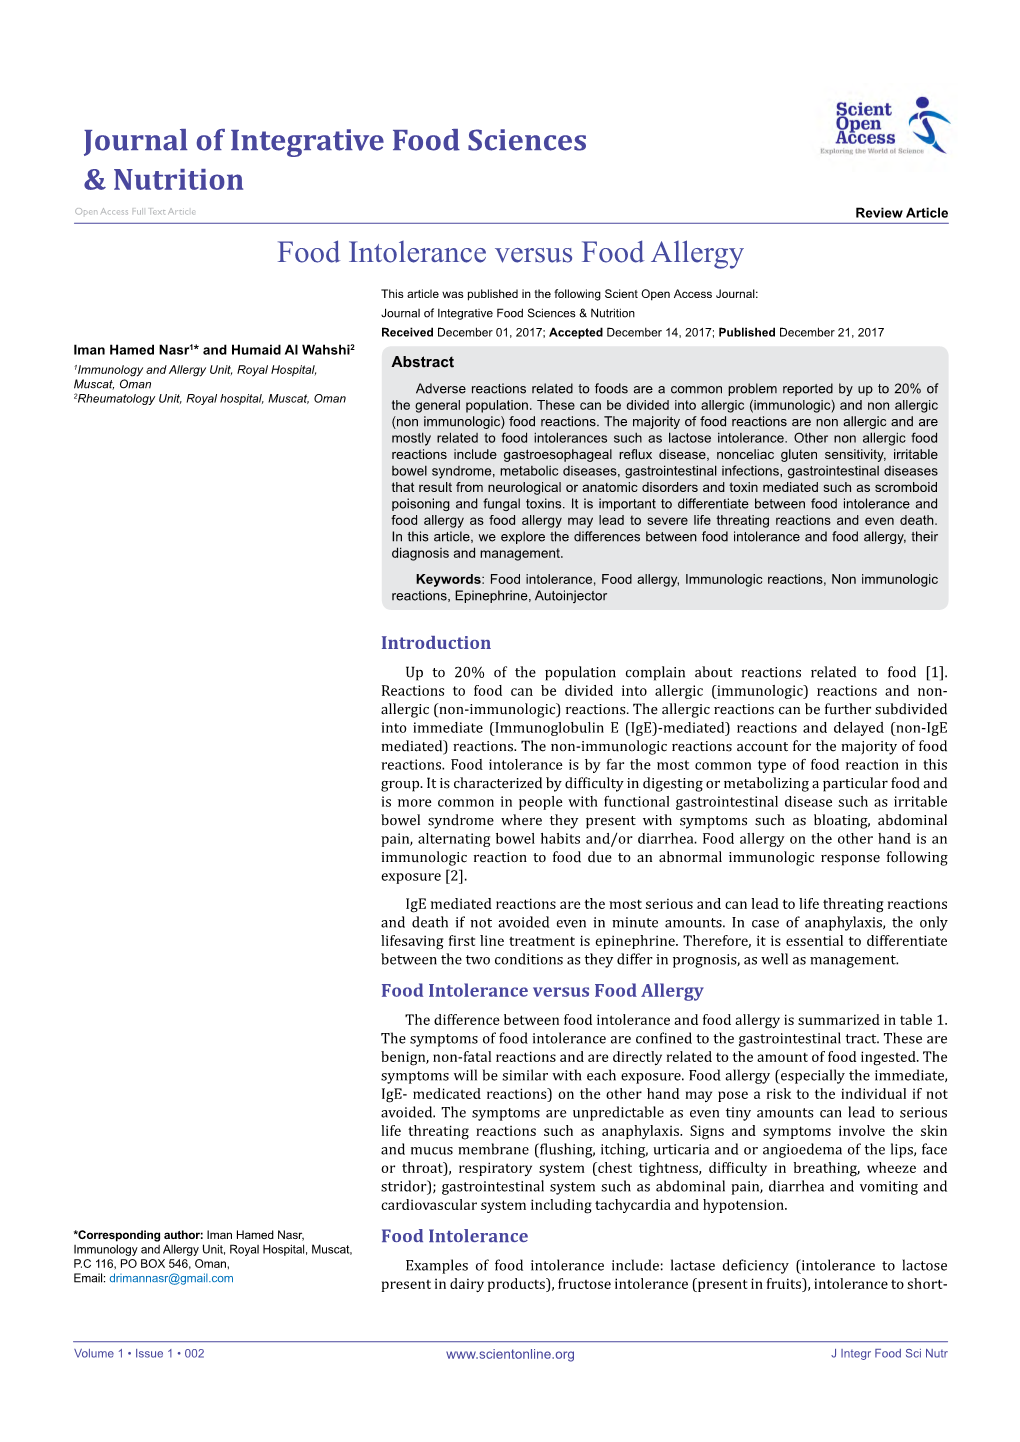 Food Intolerance Versus Food Allergy